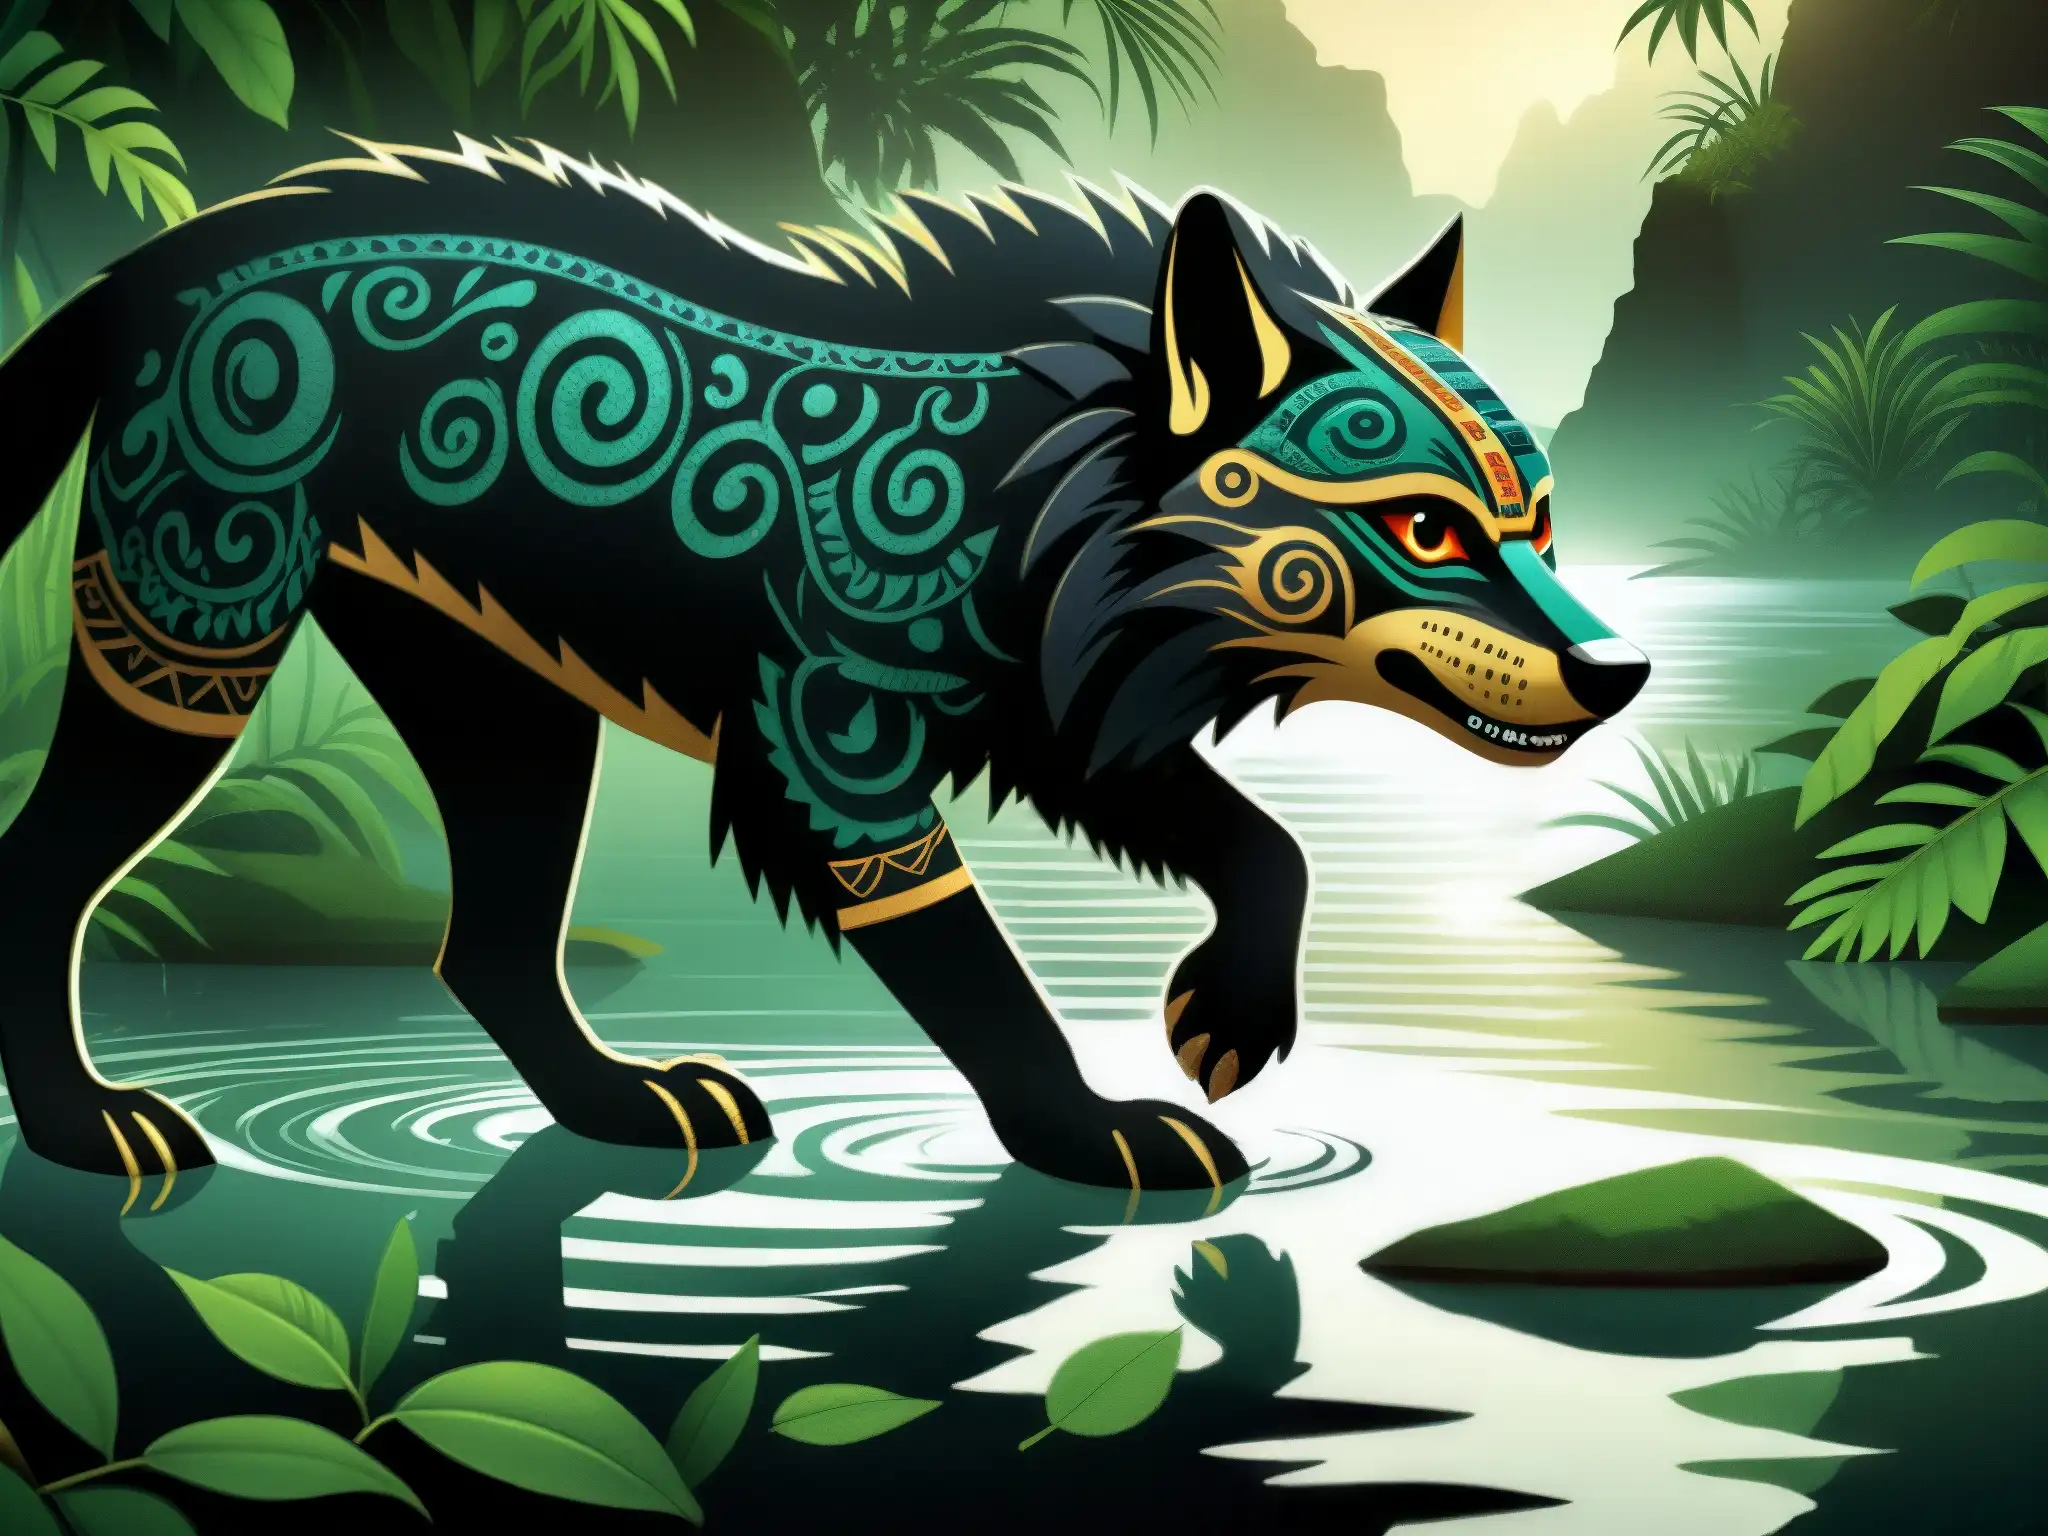 Enigmática criatura acuática Ahuizotl prehispánica acecha en el río de la jungla, rodeada de seres míticos y ruinas antiguas